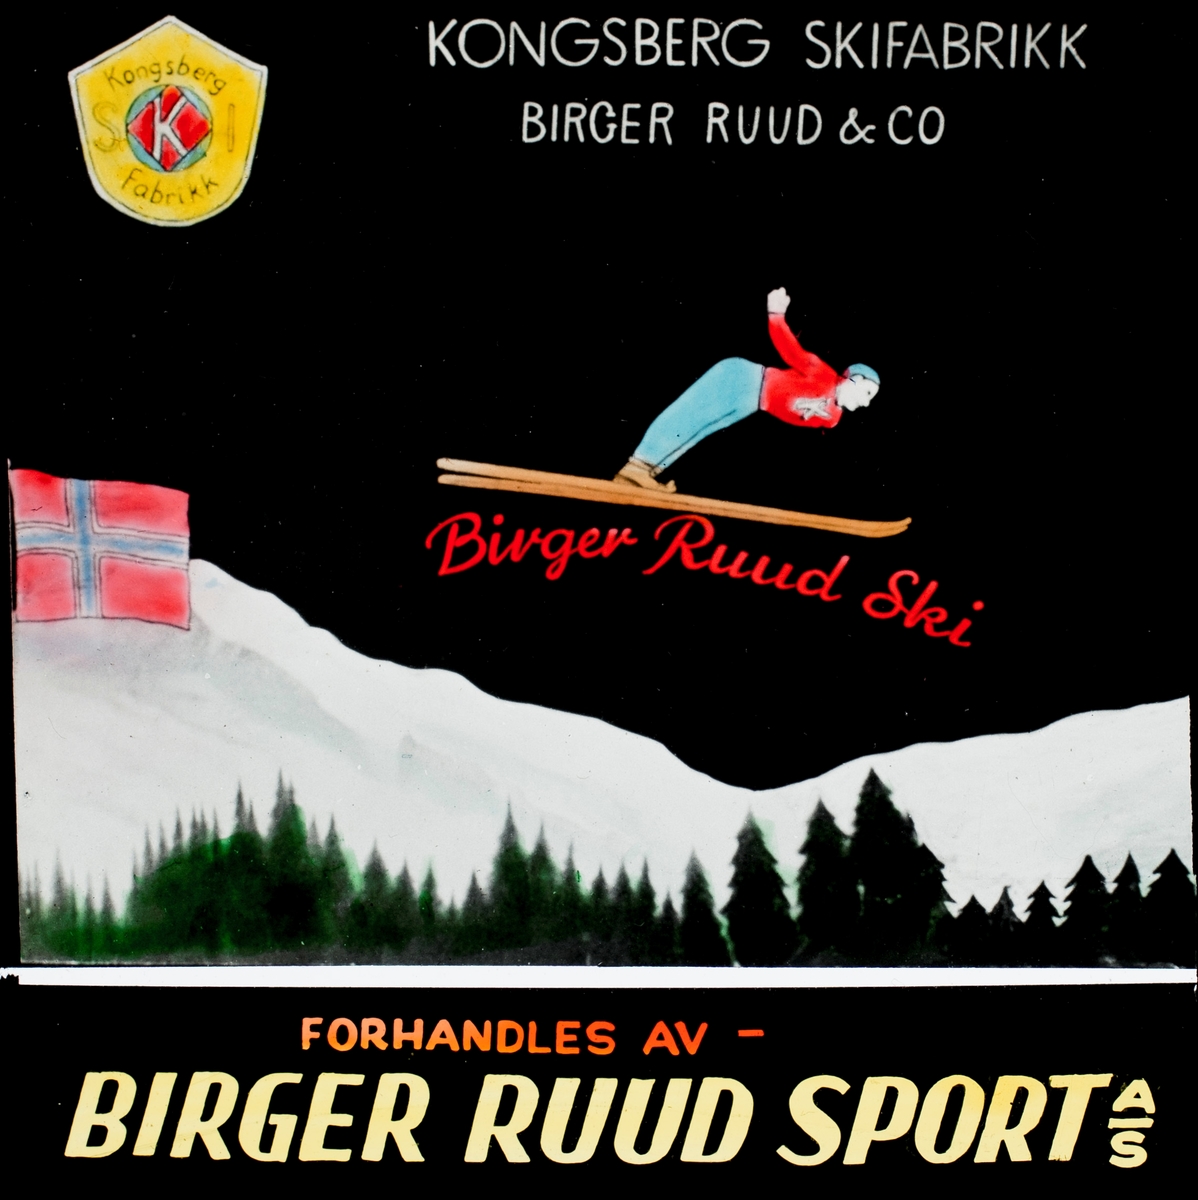 Slides promoting Birger Ruud's shop